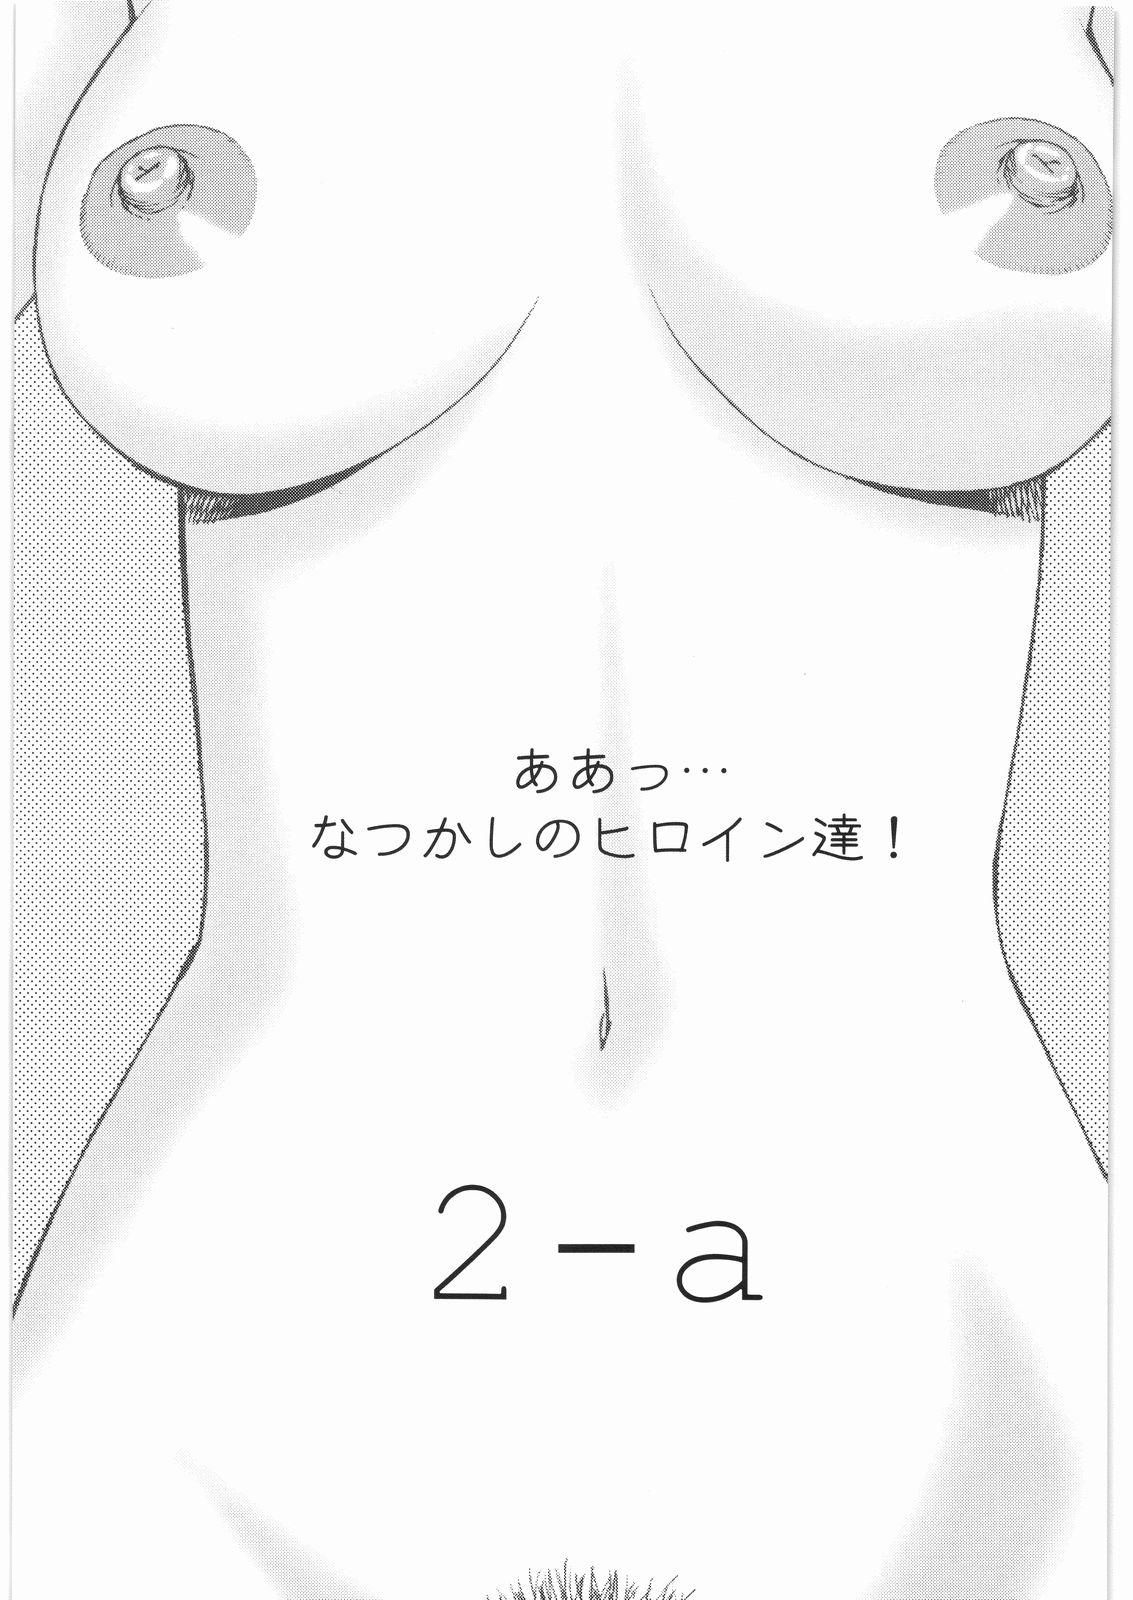 Les Aa... Natsukashi No Heroine Tachi!! 2a - La seine no hoshi Glasses - Page 2